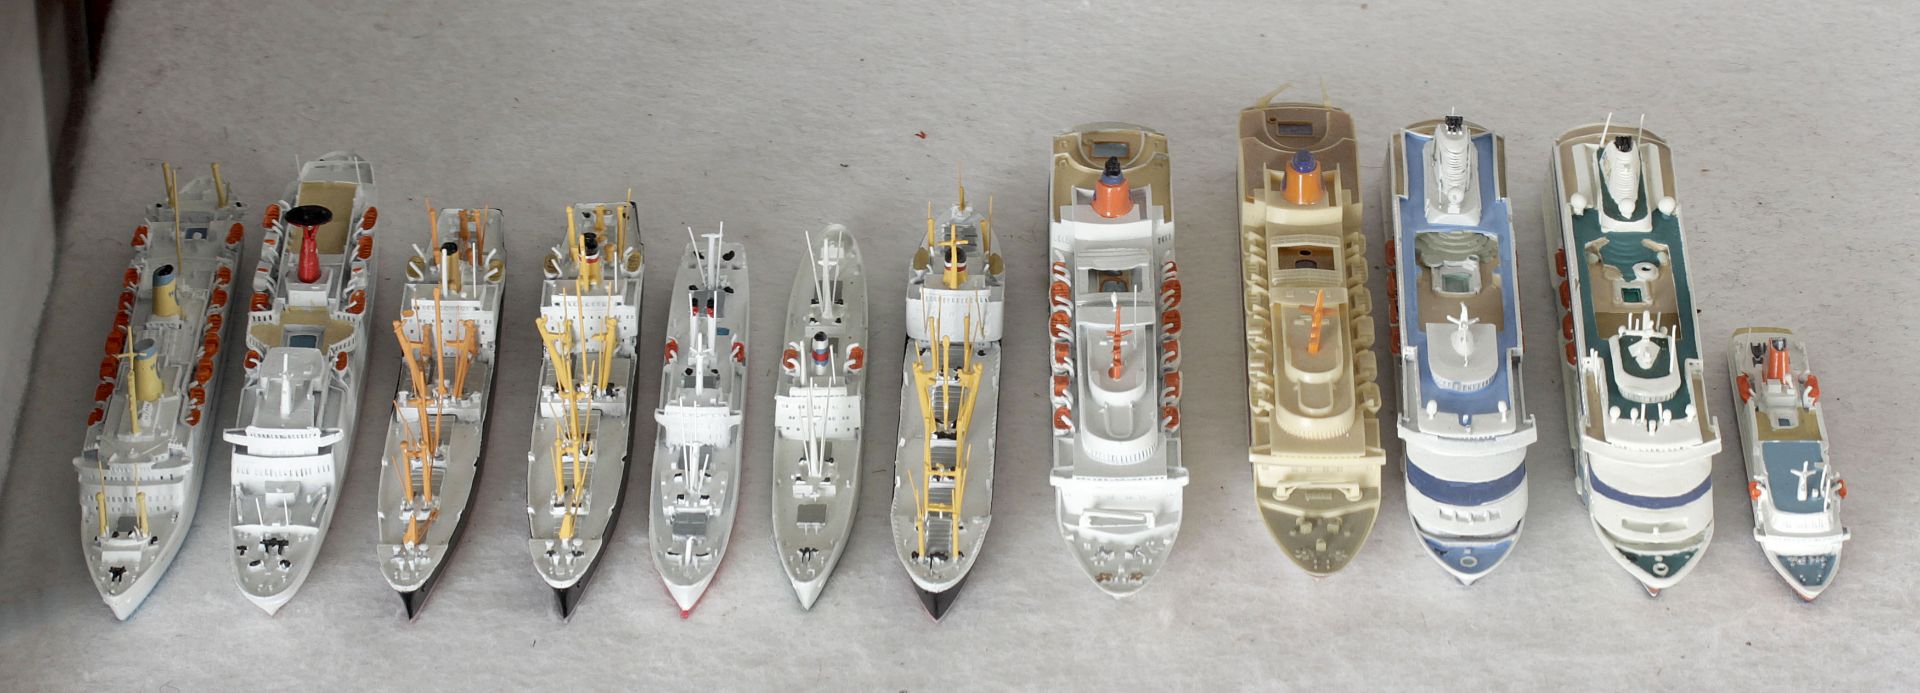 11 Metallschiffsmodelle, deutsche Handelsschiffe der 1970er-90er Jahre